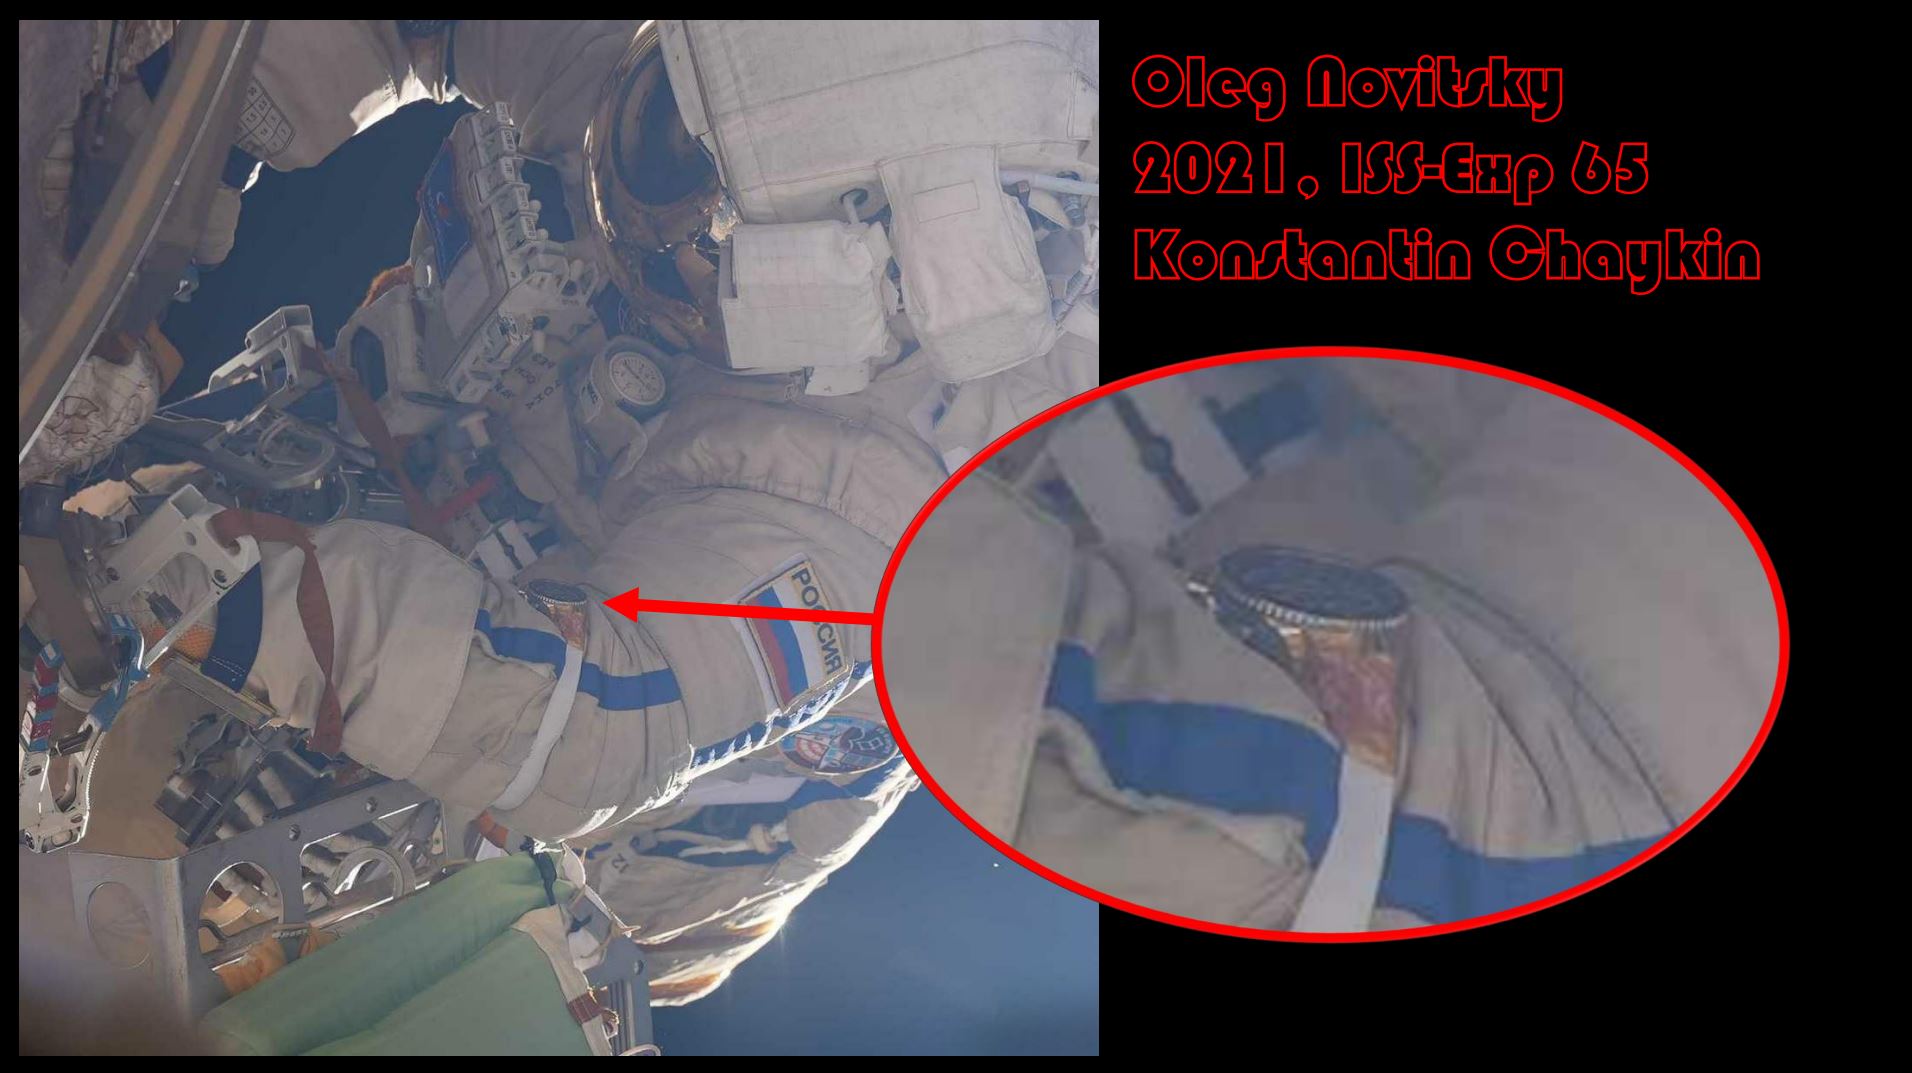 Oleg Novitsky 2021 ISS Exp 65 Konstantin Chaykin 2